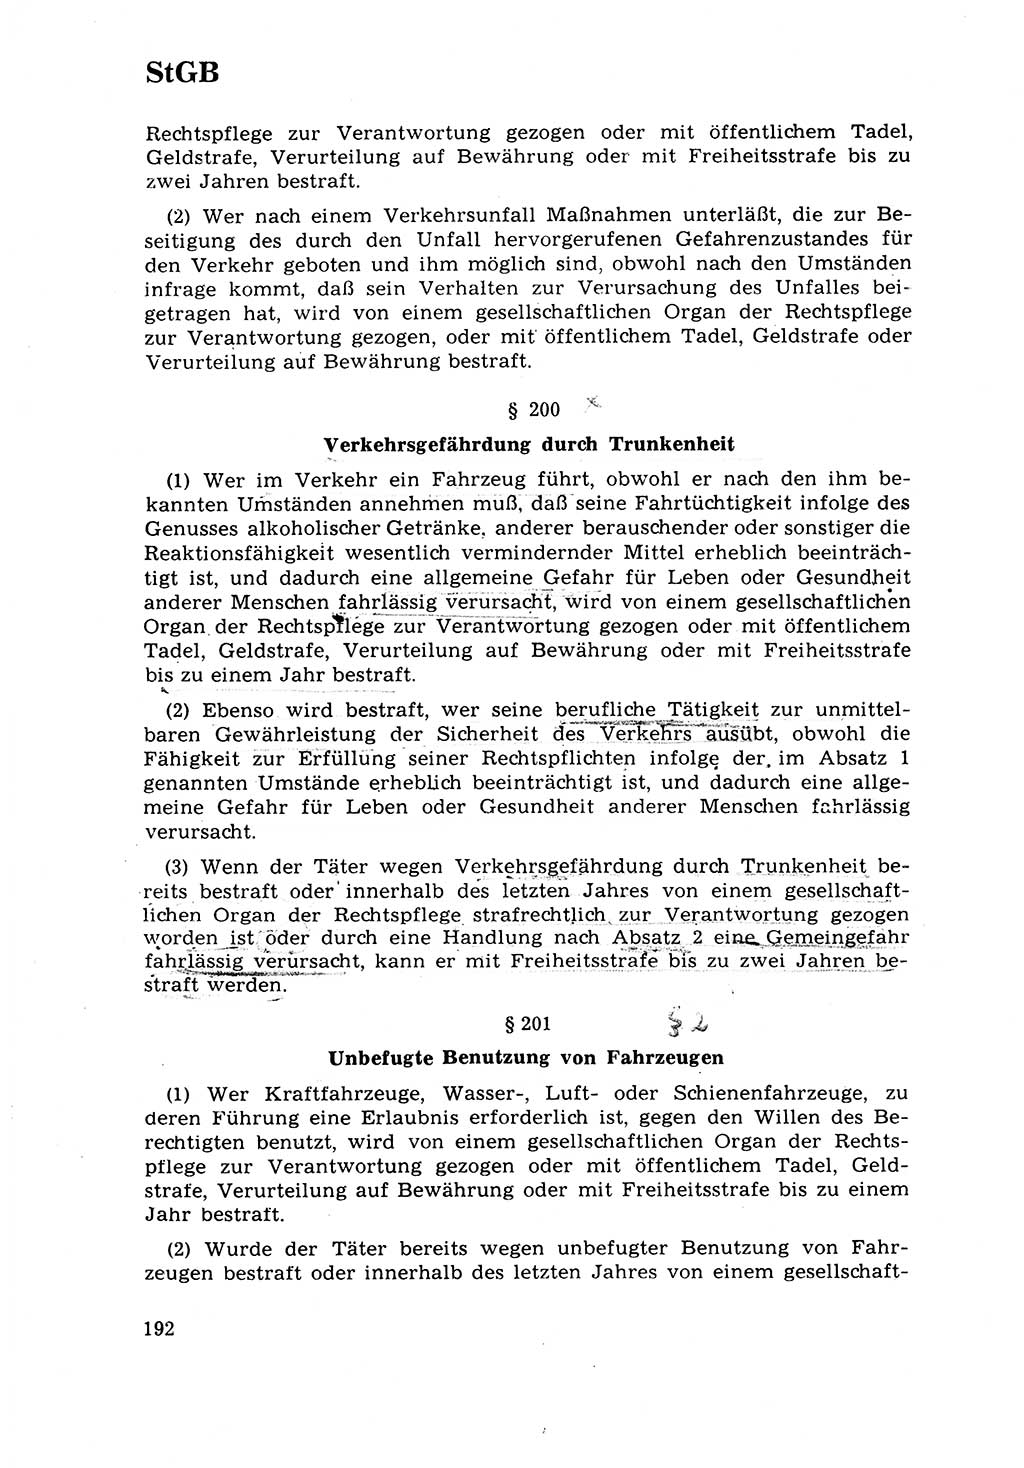 Strafrecht [Deutsche Demokratische Republik (DDR)] 1968, Seite 192 (Strafr. DDR 1968, S. 192)